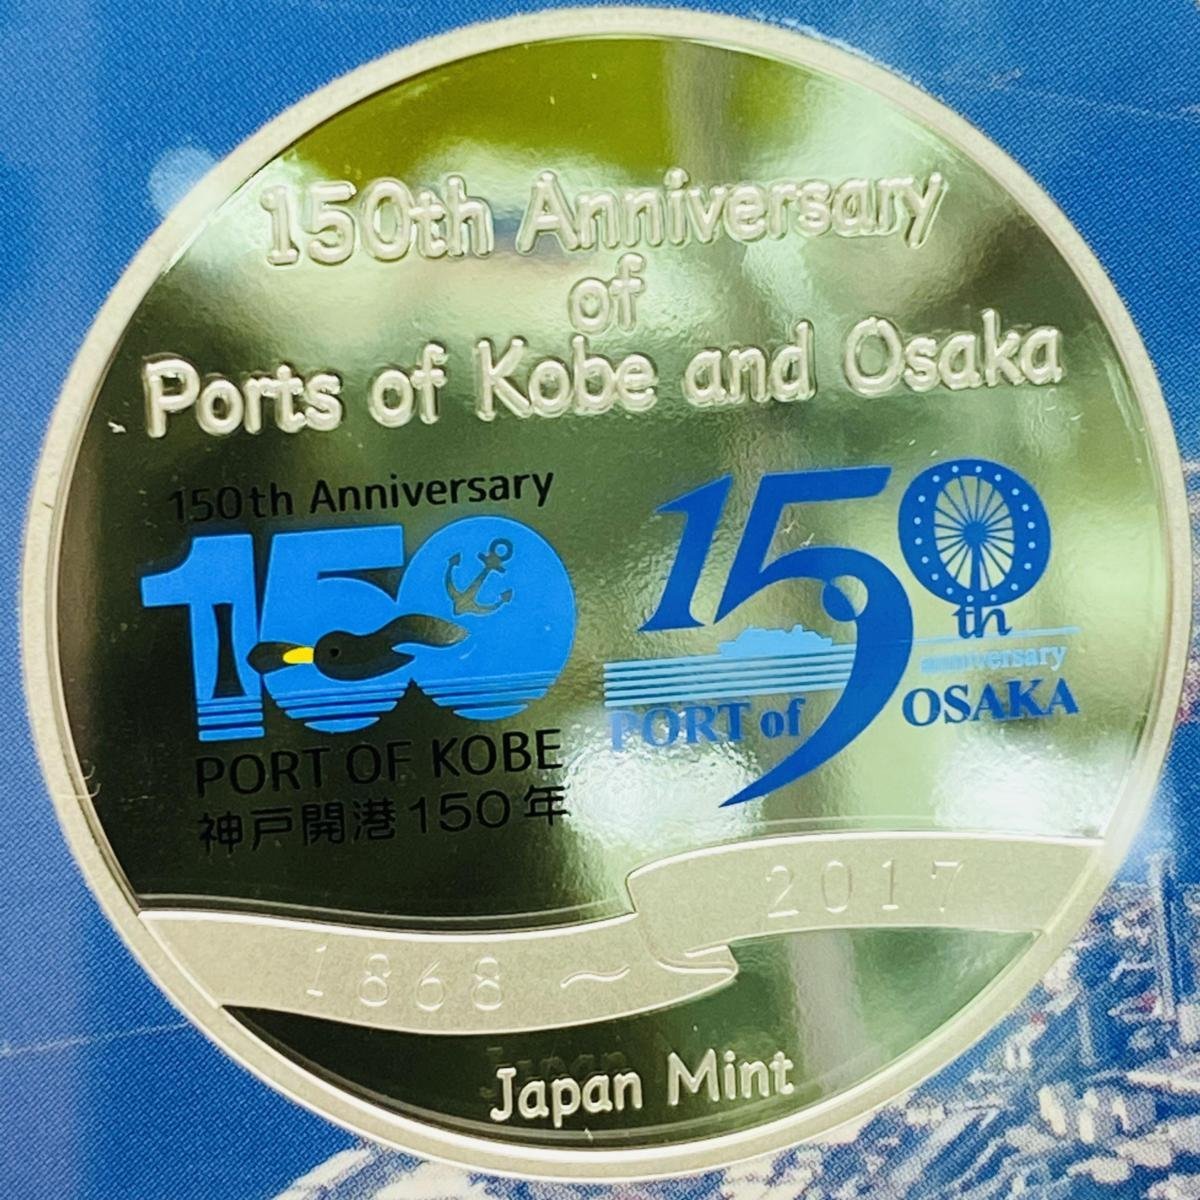 2017年(平成29年) 神戸開港 大阪港開港150年 記念 プルーフ 貨幣セット 